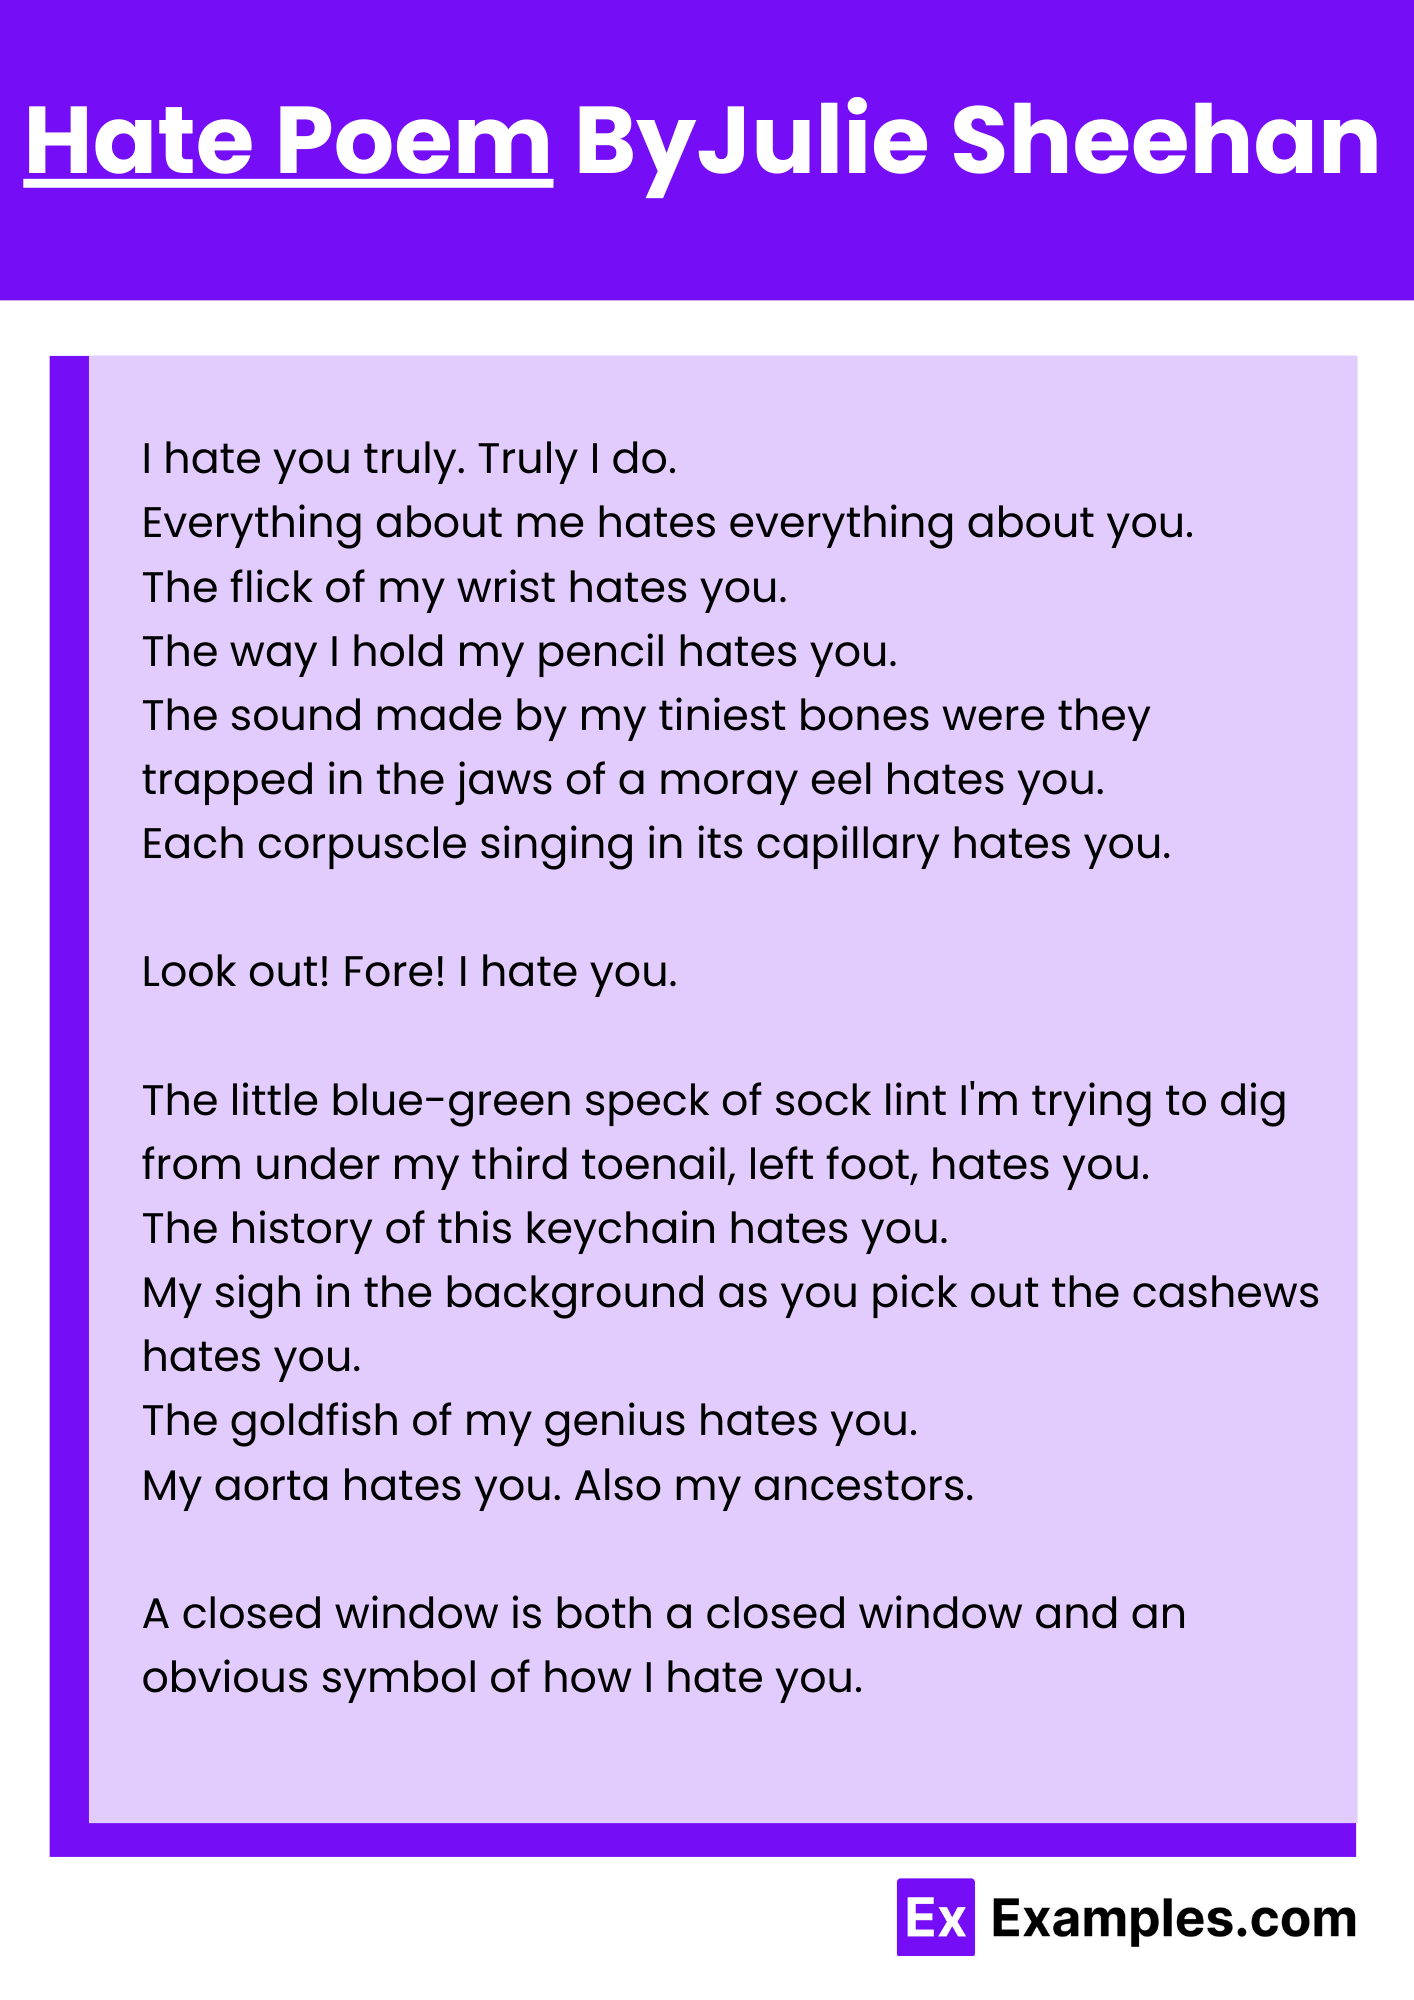 Hate Poem By Julie Sheehan